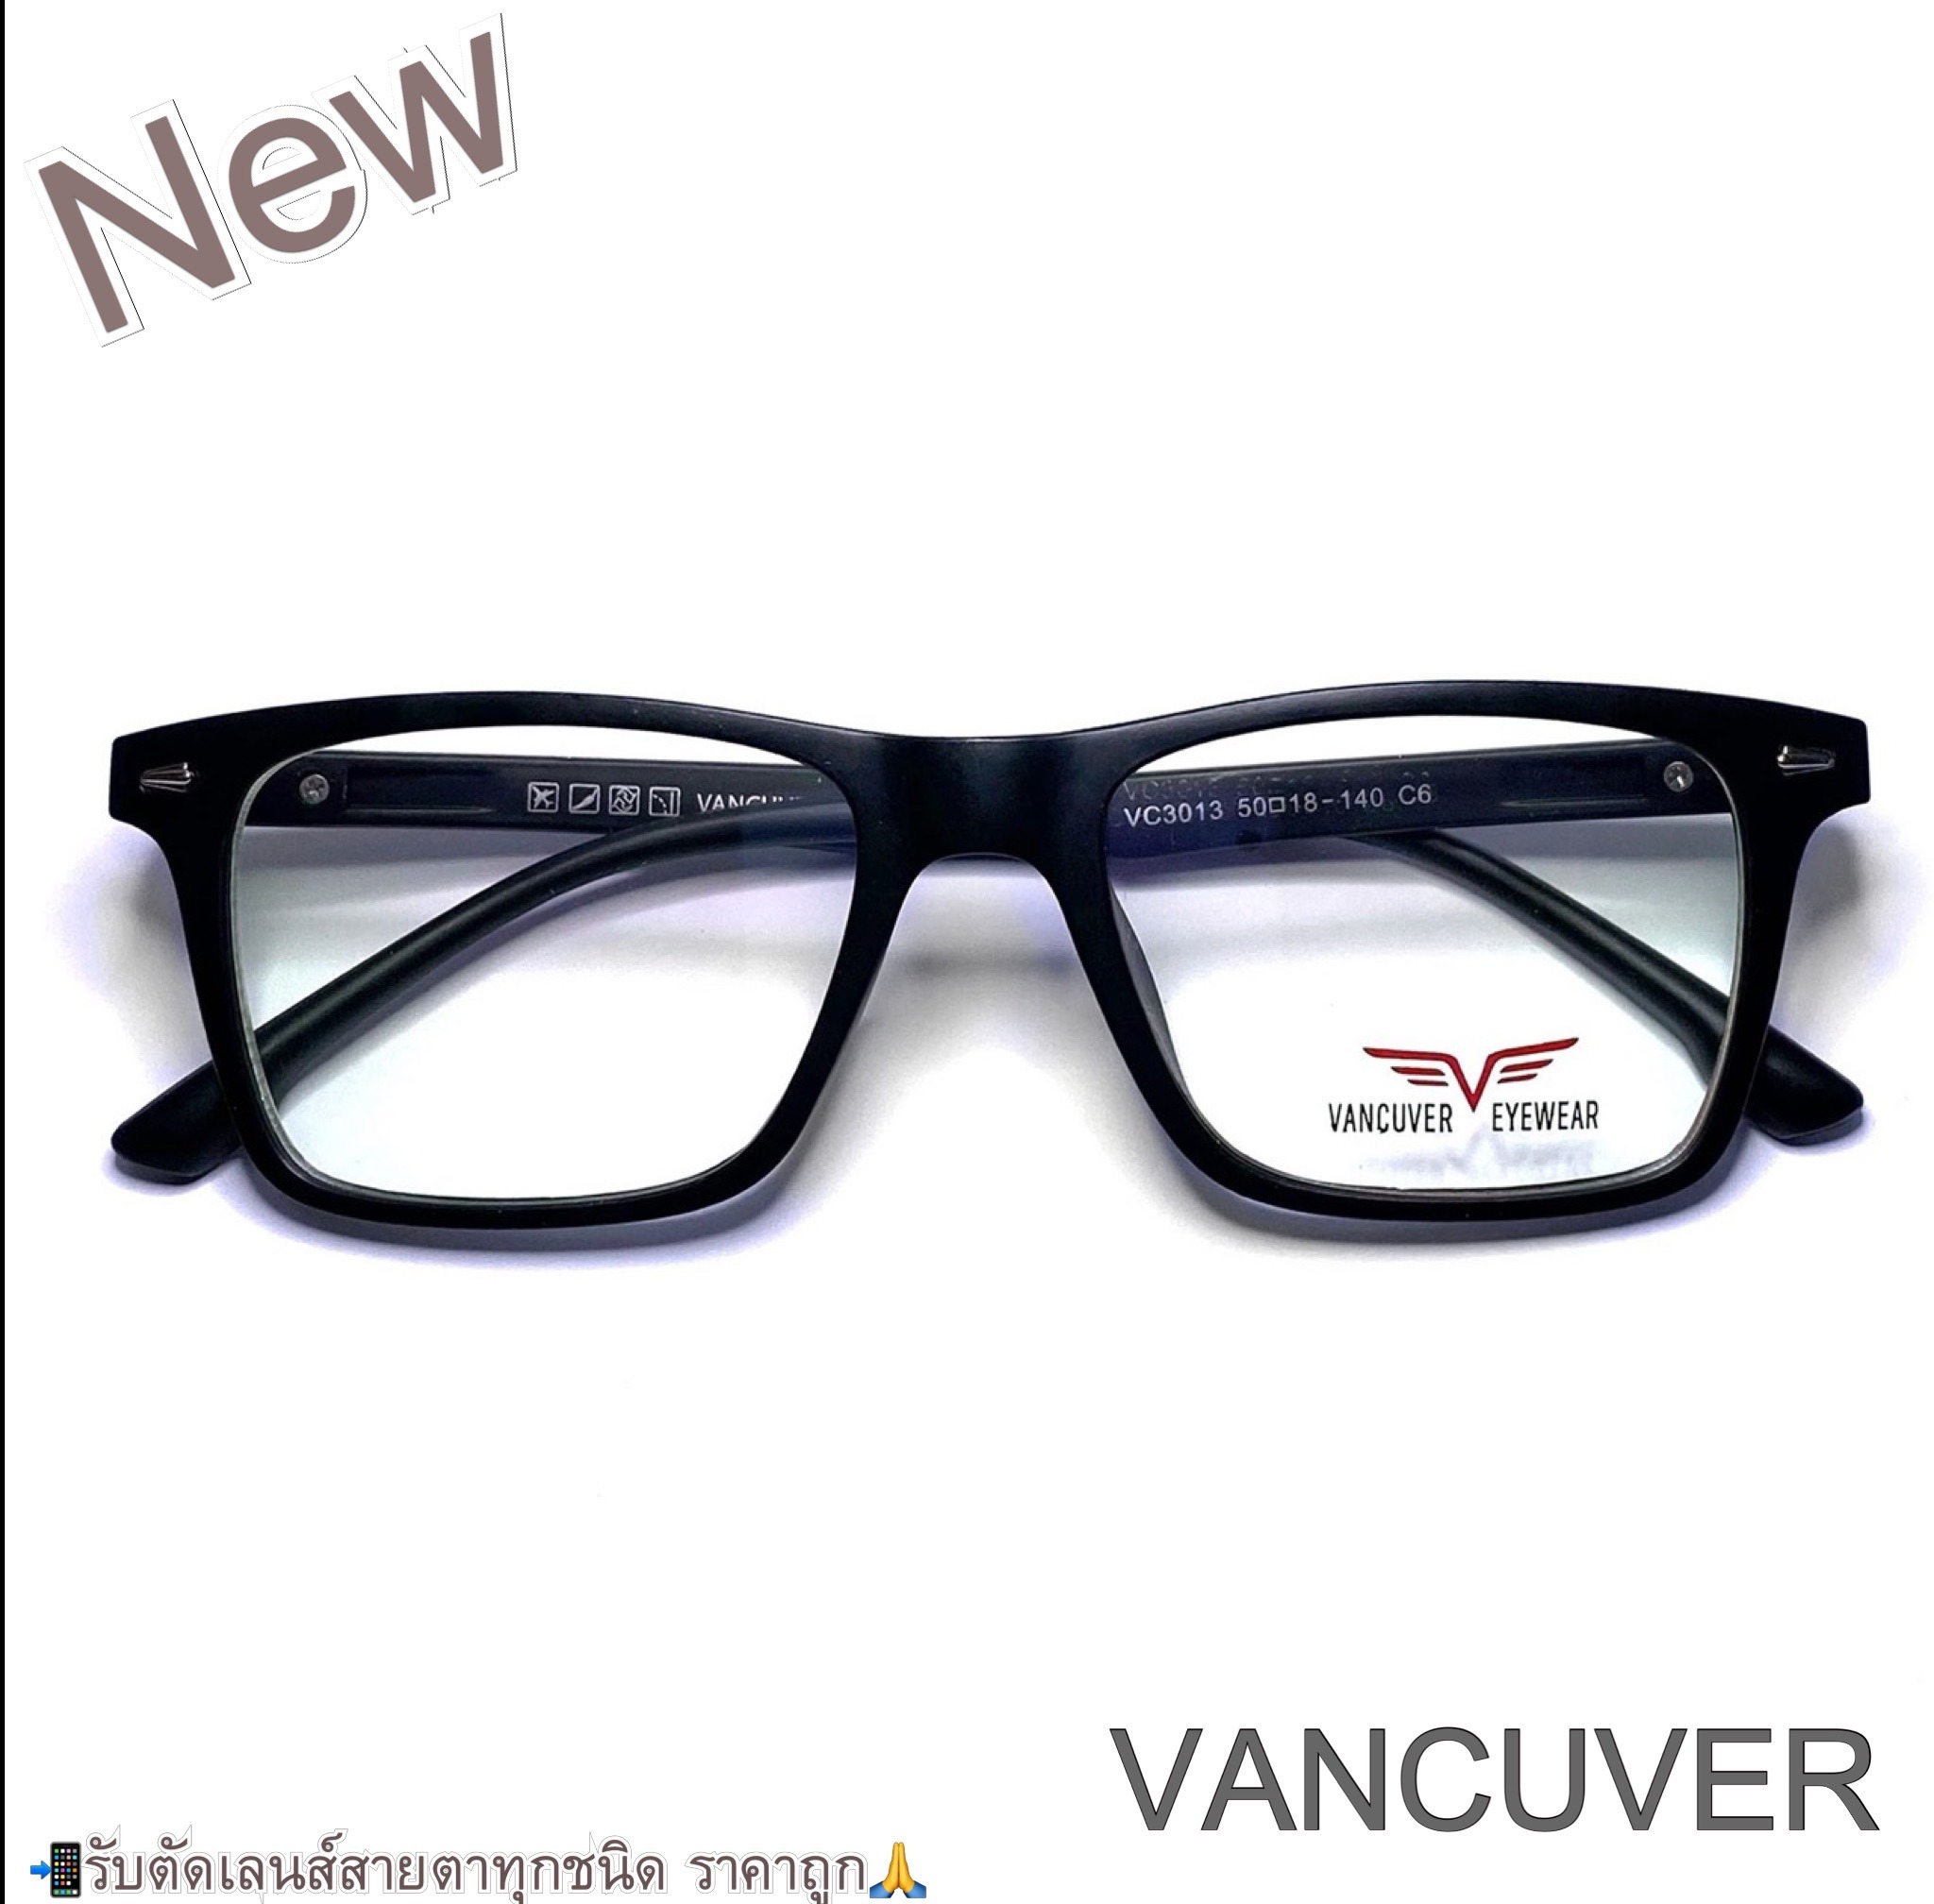 กรอบแว่นตา สำหรับตัดเลนส์ แว่นสายตา แว่นตา รุ่น VANCUVER 3013 สีดำ ทรงเหลี่ยม ขาสปริง วัสดุ พลาสติกพีซี เกรดเอ เบา เหนียว ไม่แตกหัก